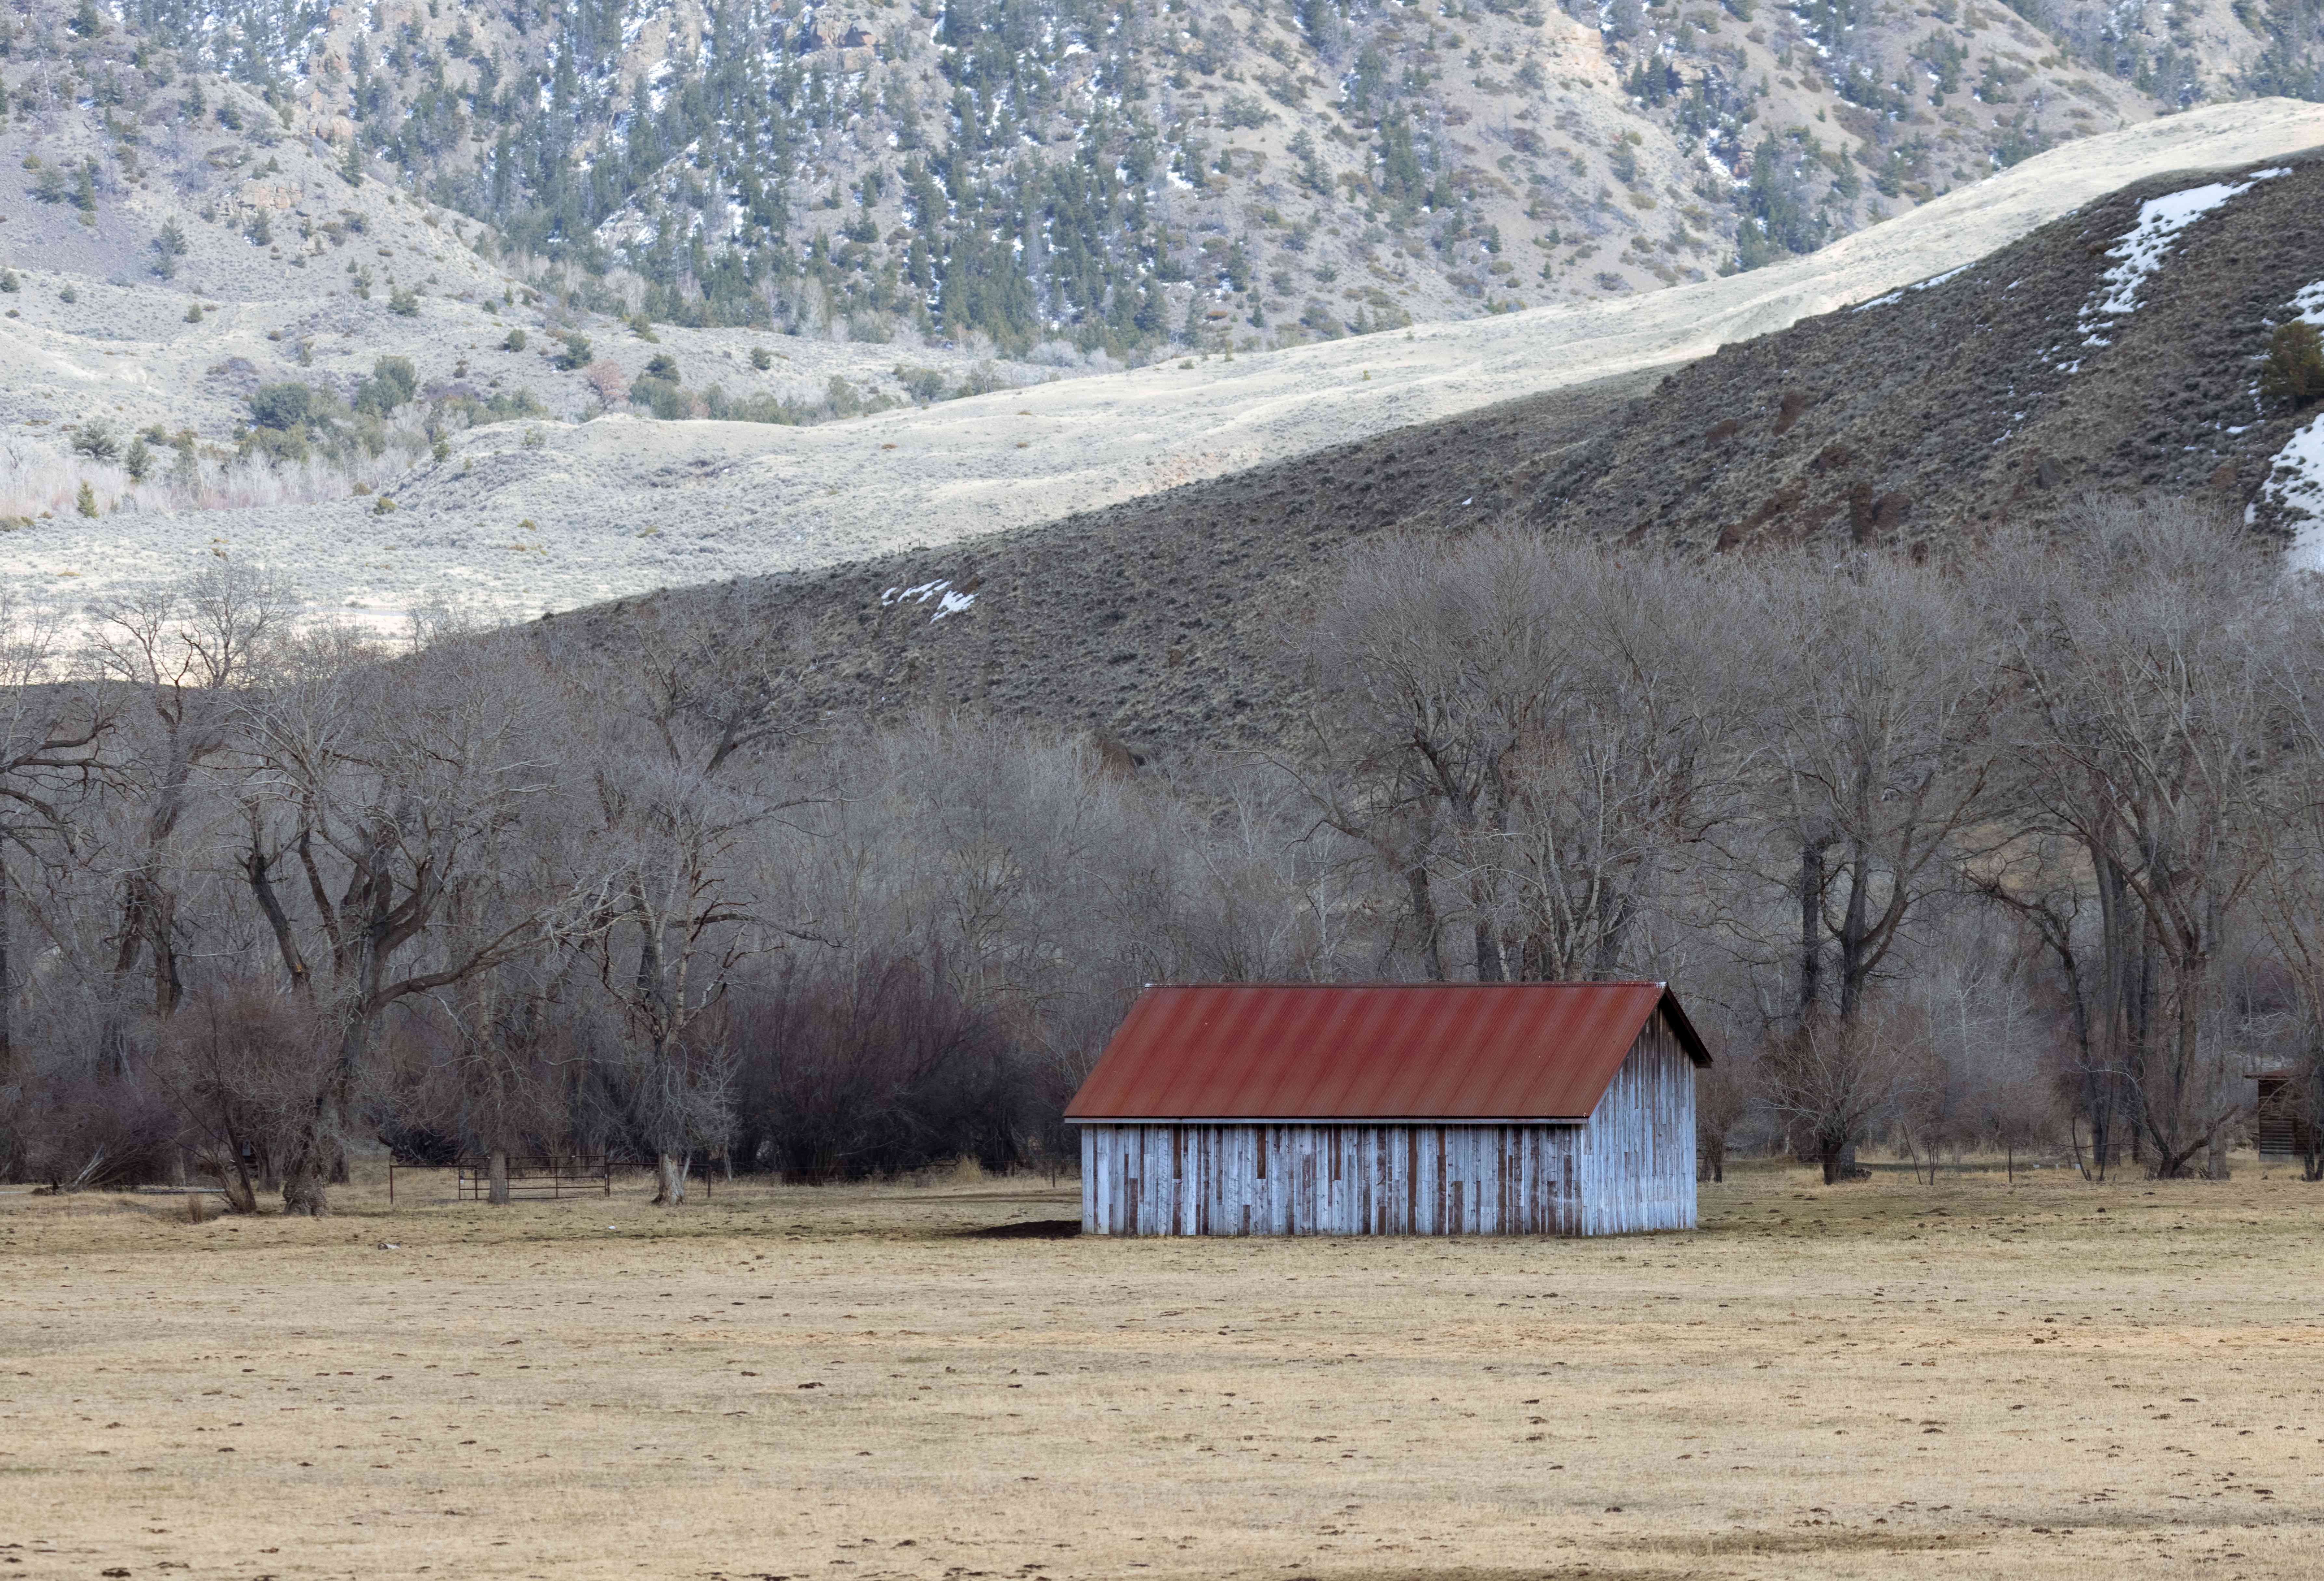 风化木谷仓与红色屋顶在冬天的田野与山为背景